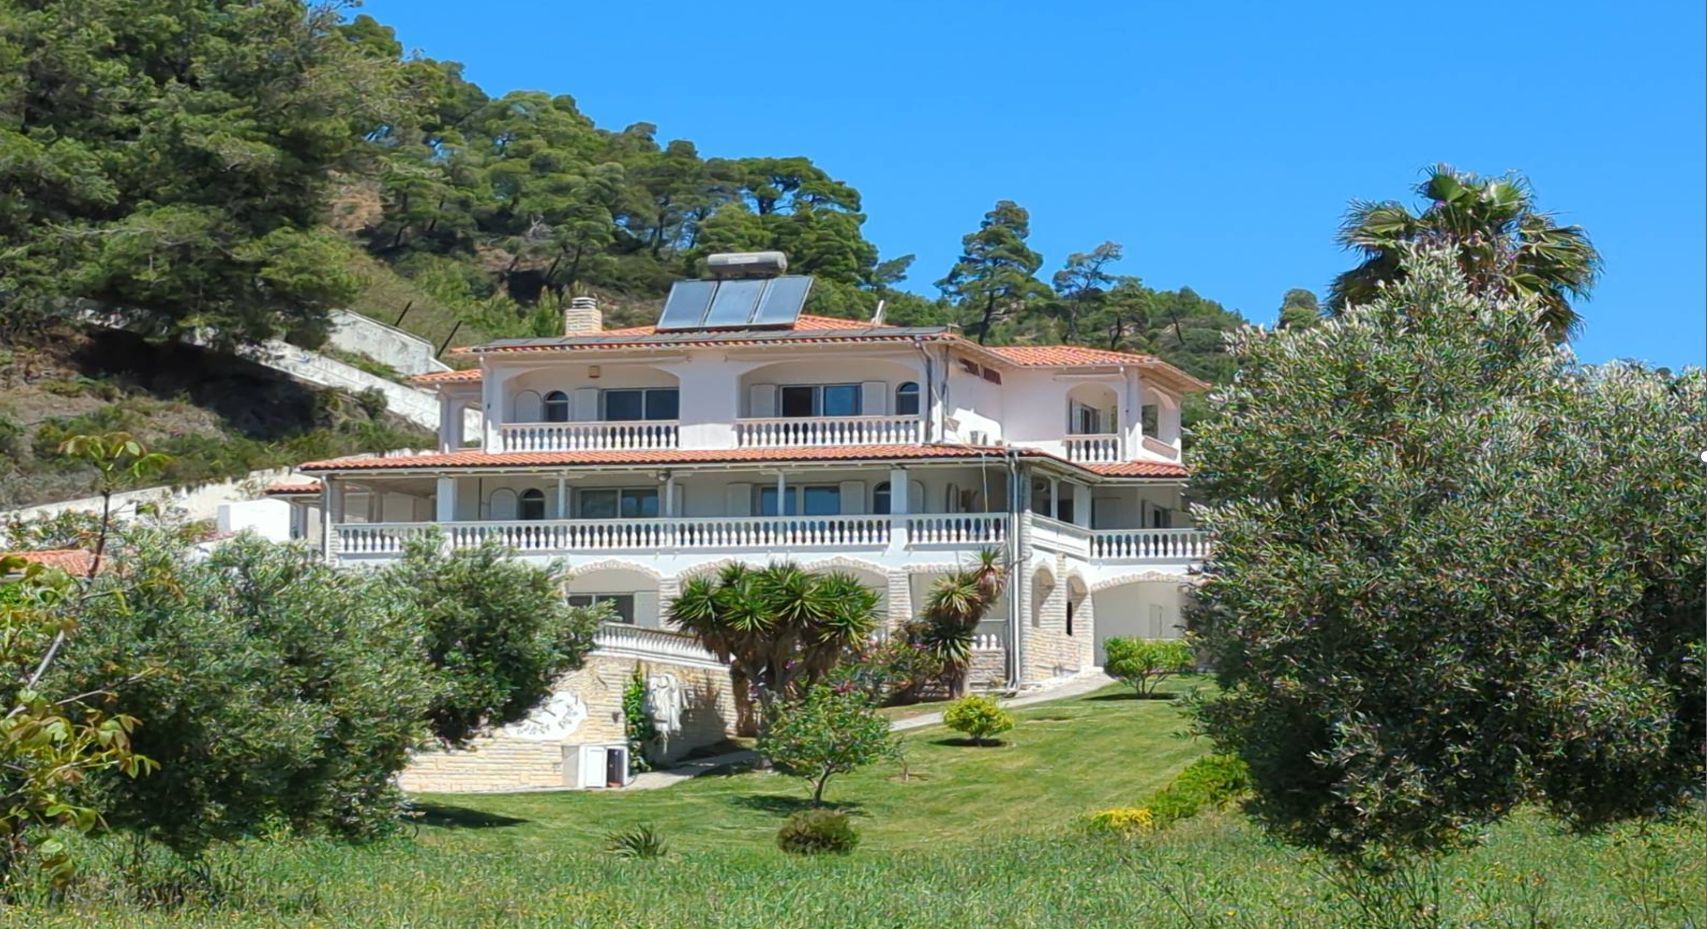 The family's chic villa in Greece